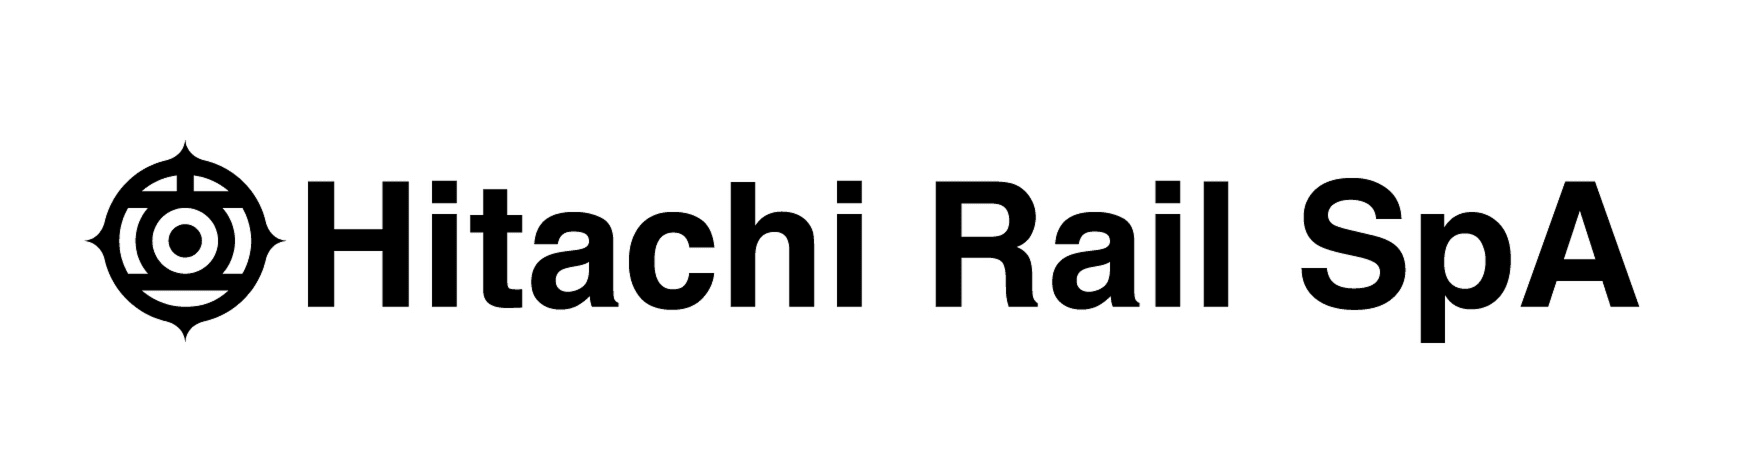 Azioni Hitachi Rail STS: Come Fare Trading Online con i CFD